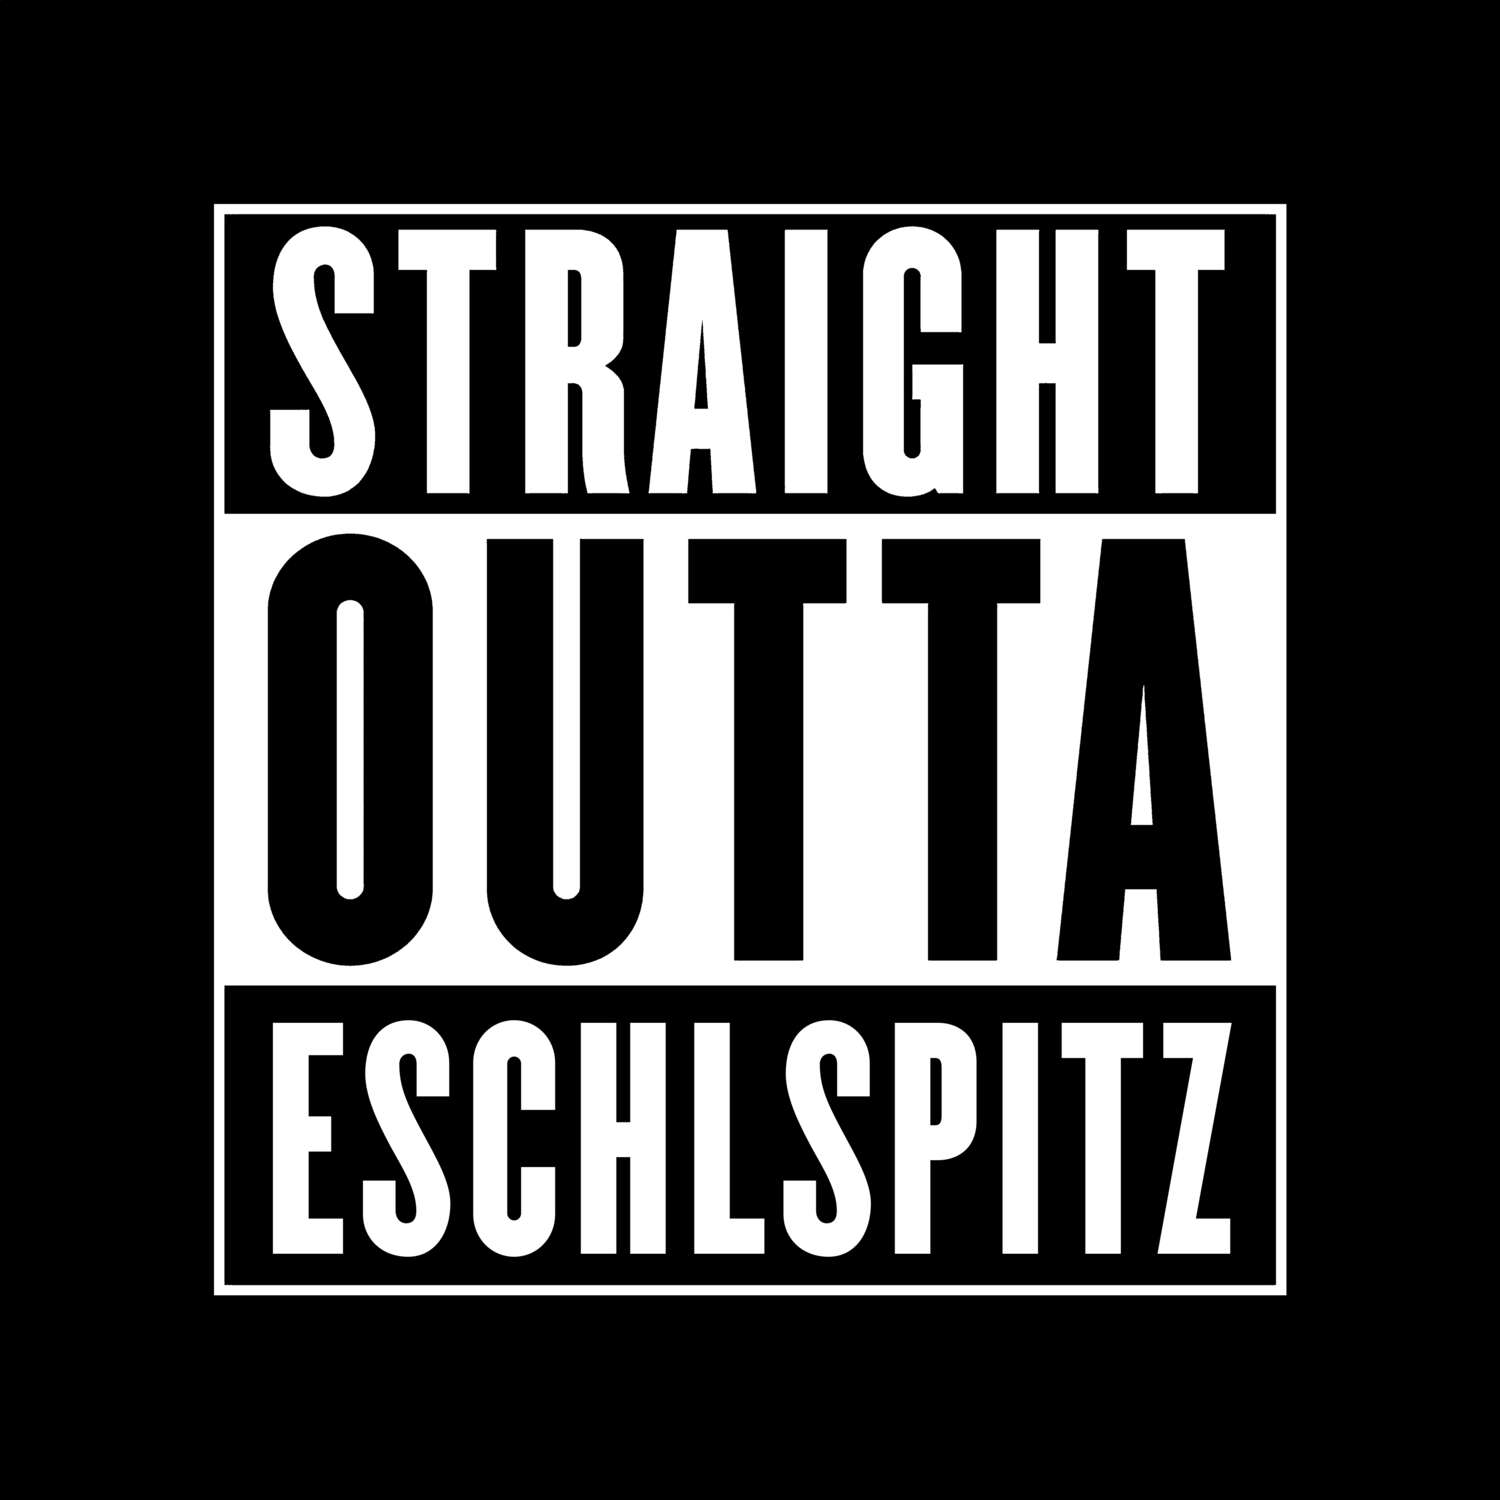 Eschlspitz T-Shirt »Straight Outta«